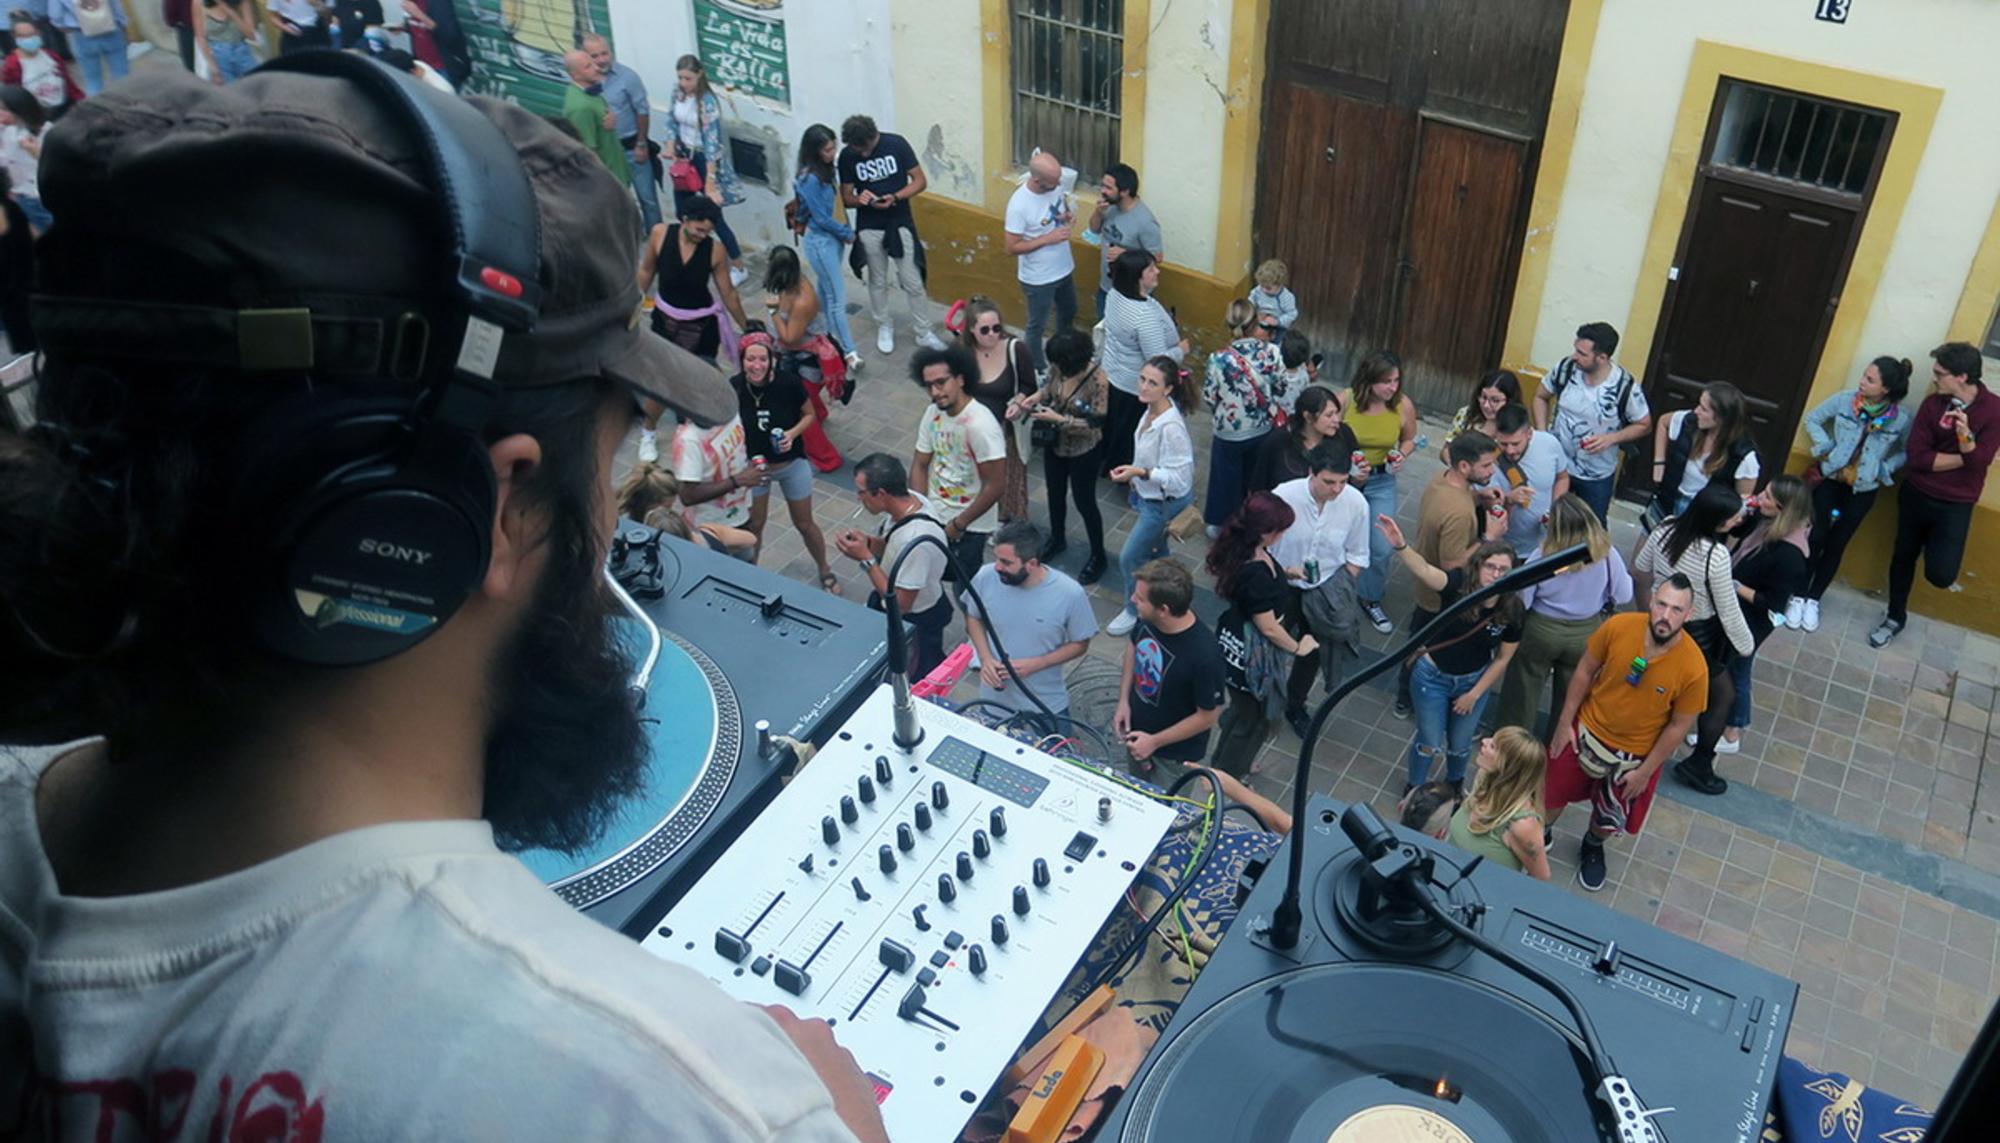 Festival ConFUSIÓN, arte y música en comunidad en el barrio valenciano de Benimaclet 1